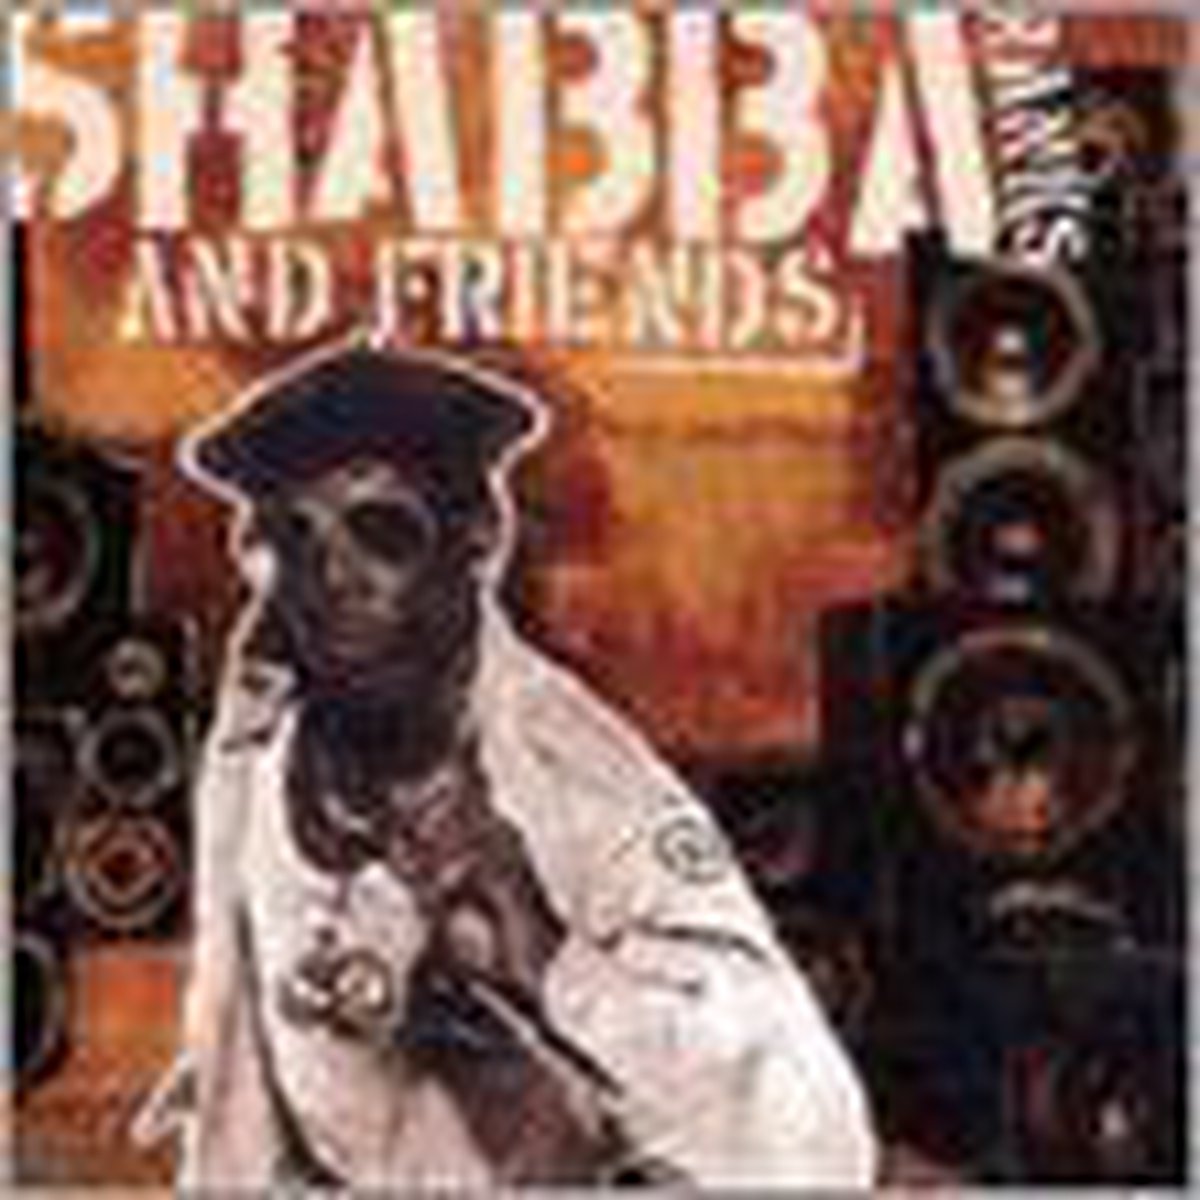 Shabba & Friends - Shabba Ranks